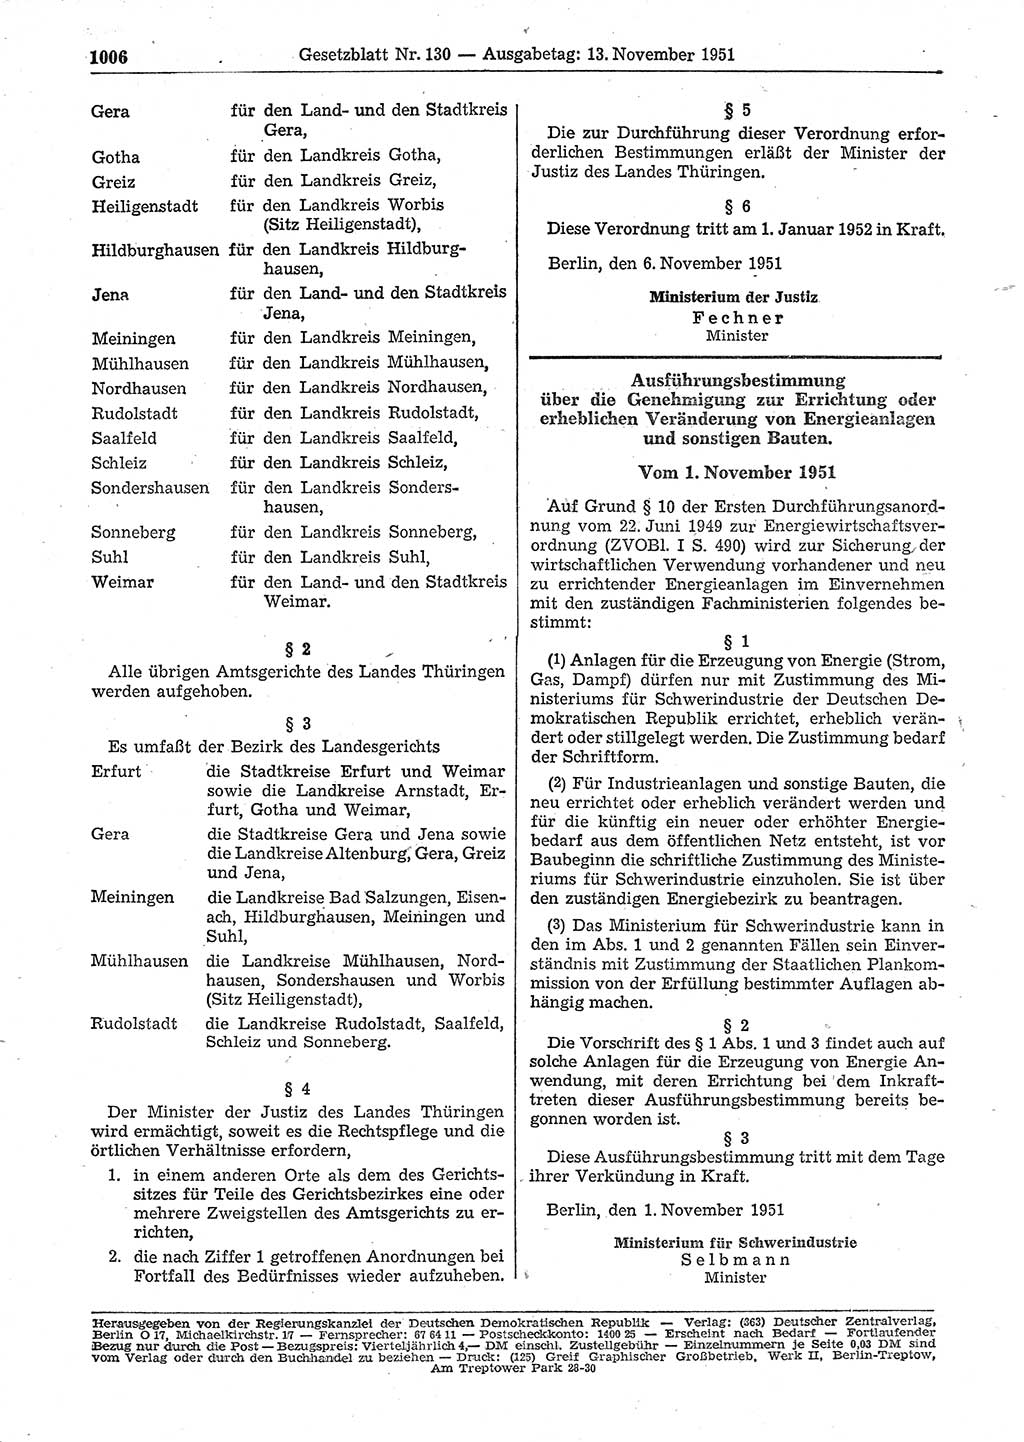 Gesetzblatt (GBl.) der Deutschen Demokratischen Republik (DDR) 1951, Seite 1006 (GBl. DDR 1951, S. 1006)